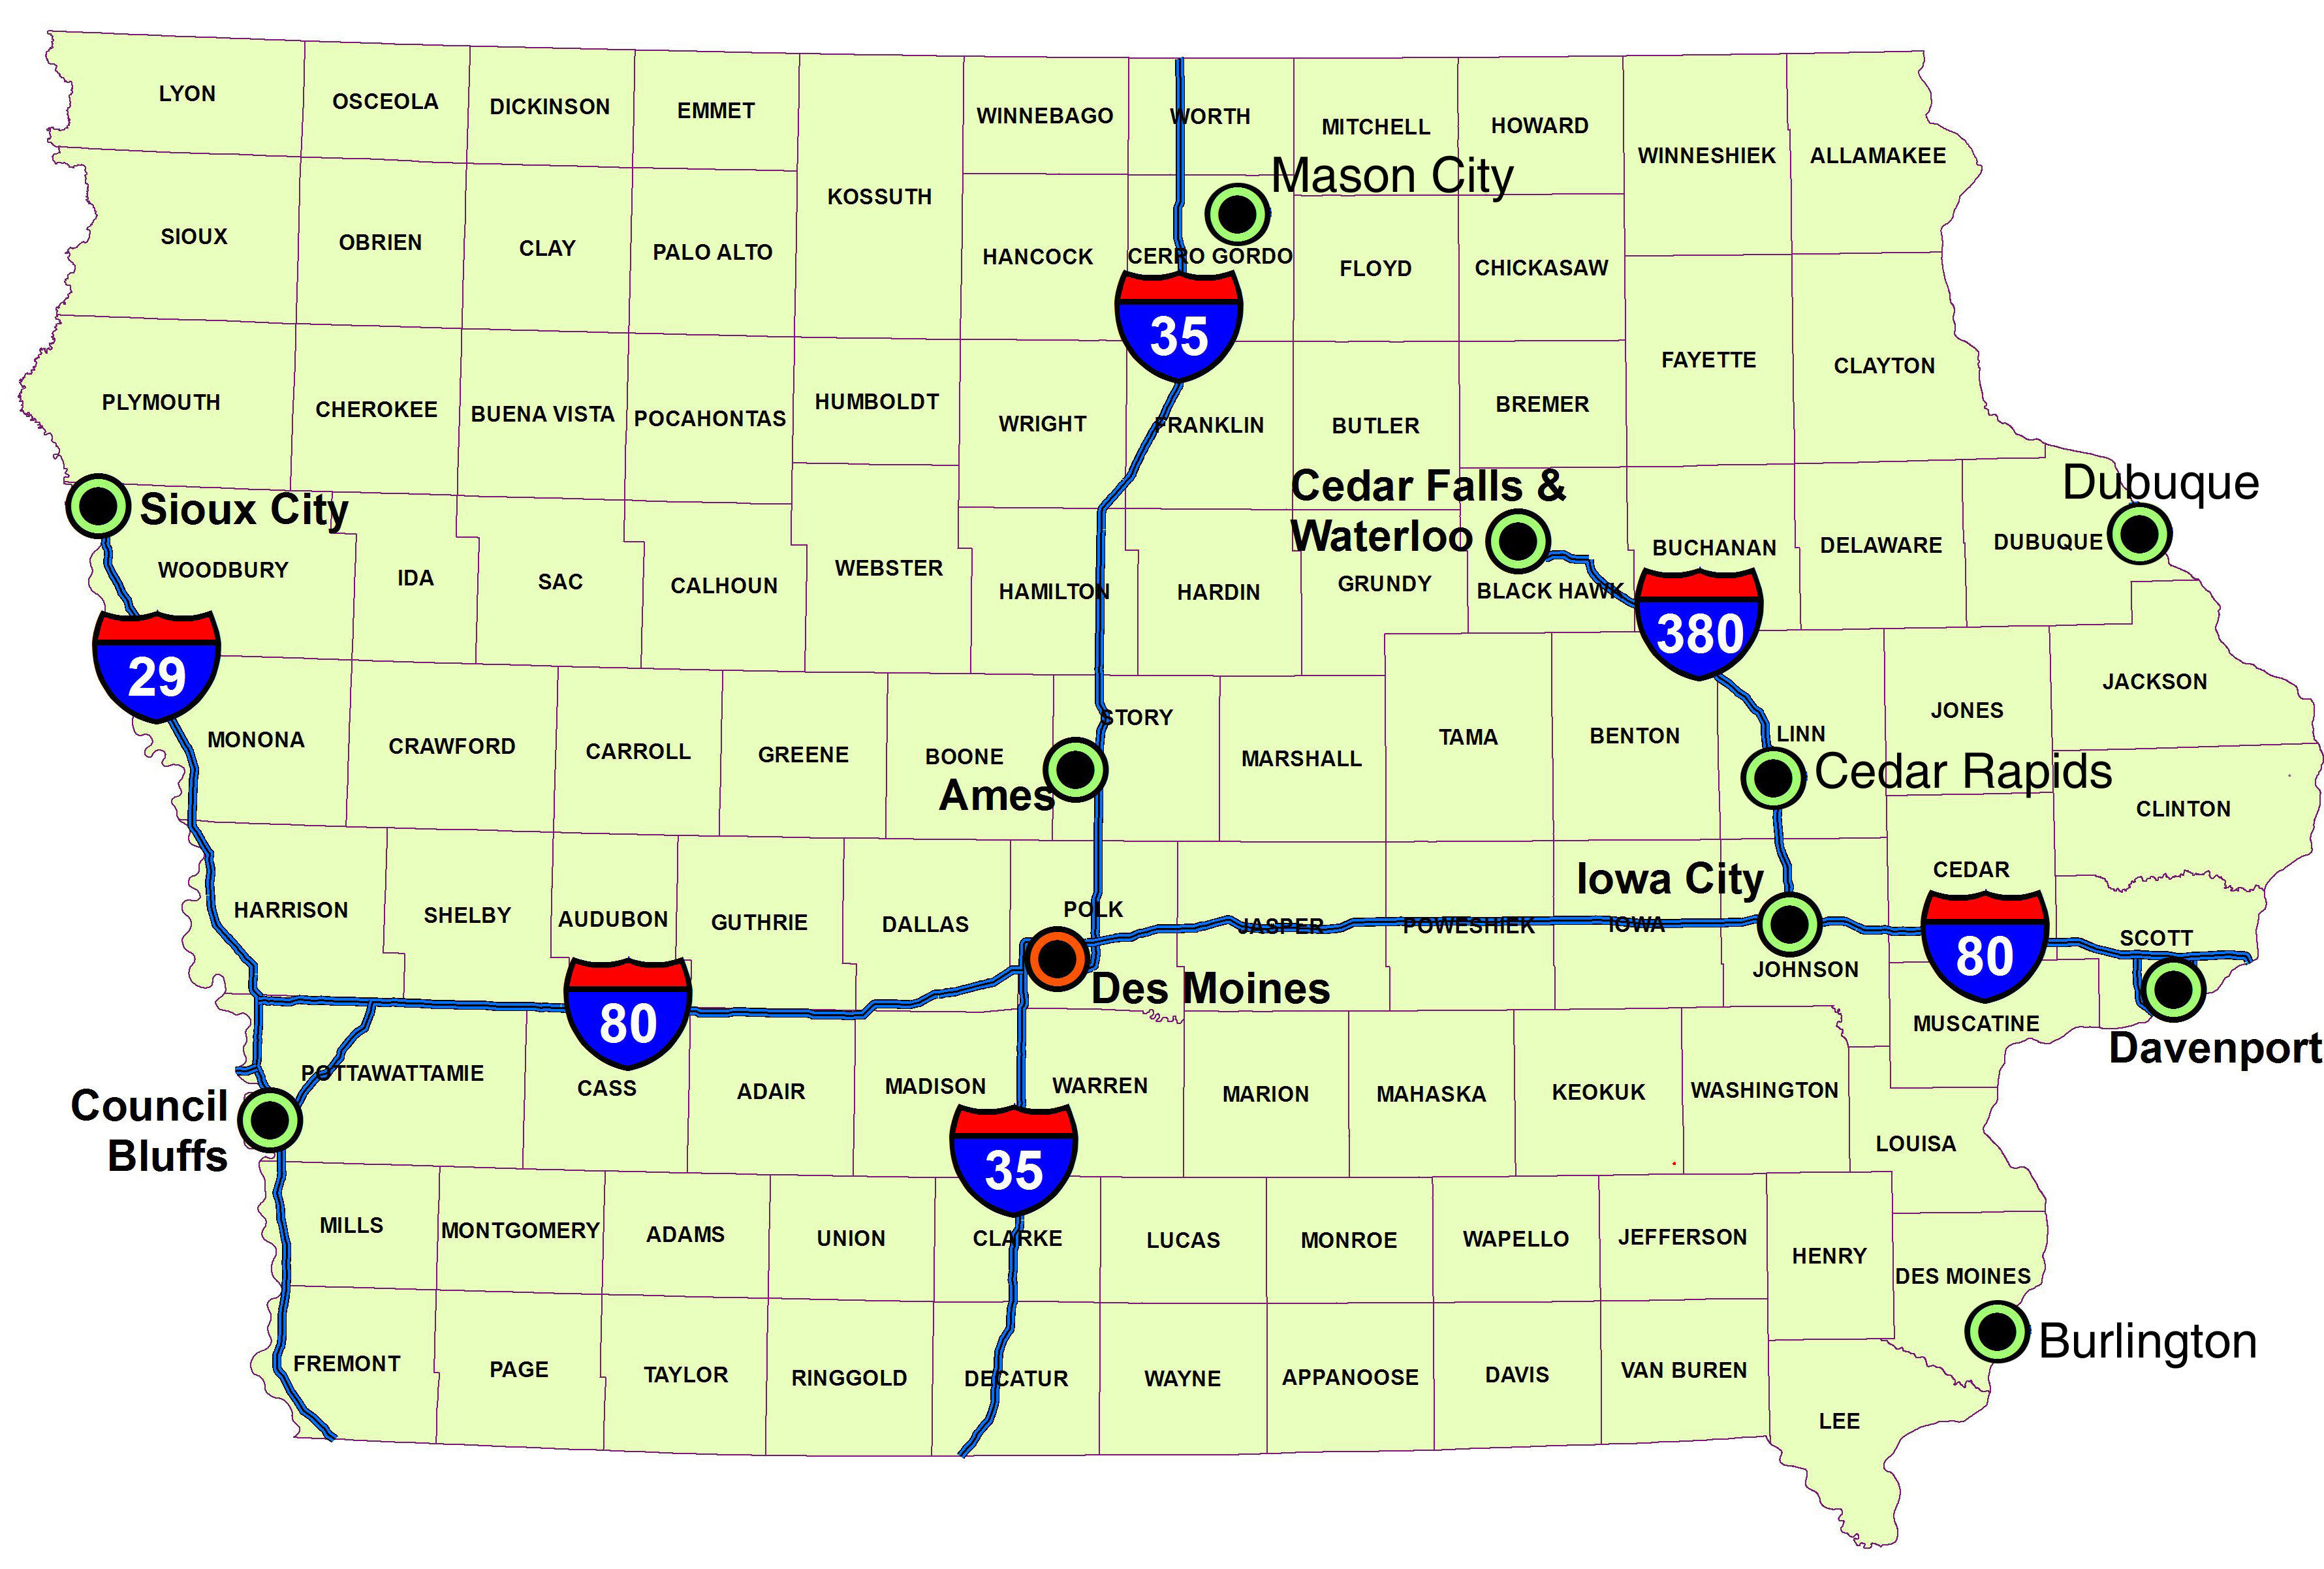 Landkarte Iowa (Karte Interstate Highways) : Weltkarte.com - Karten und